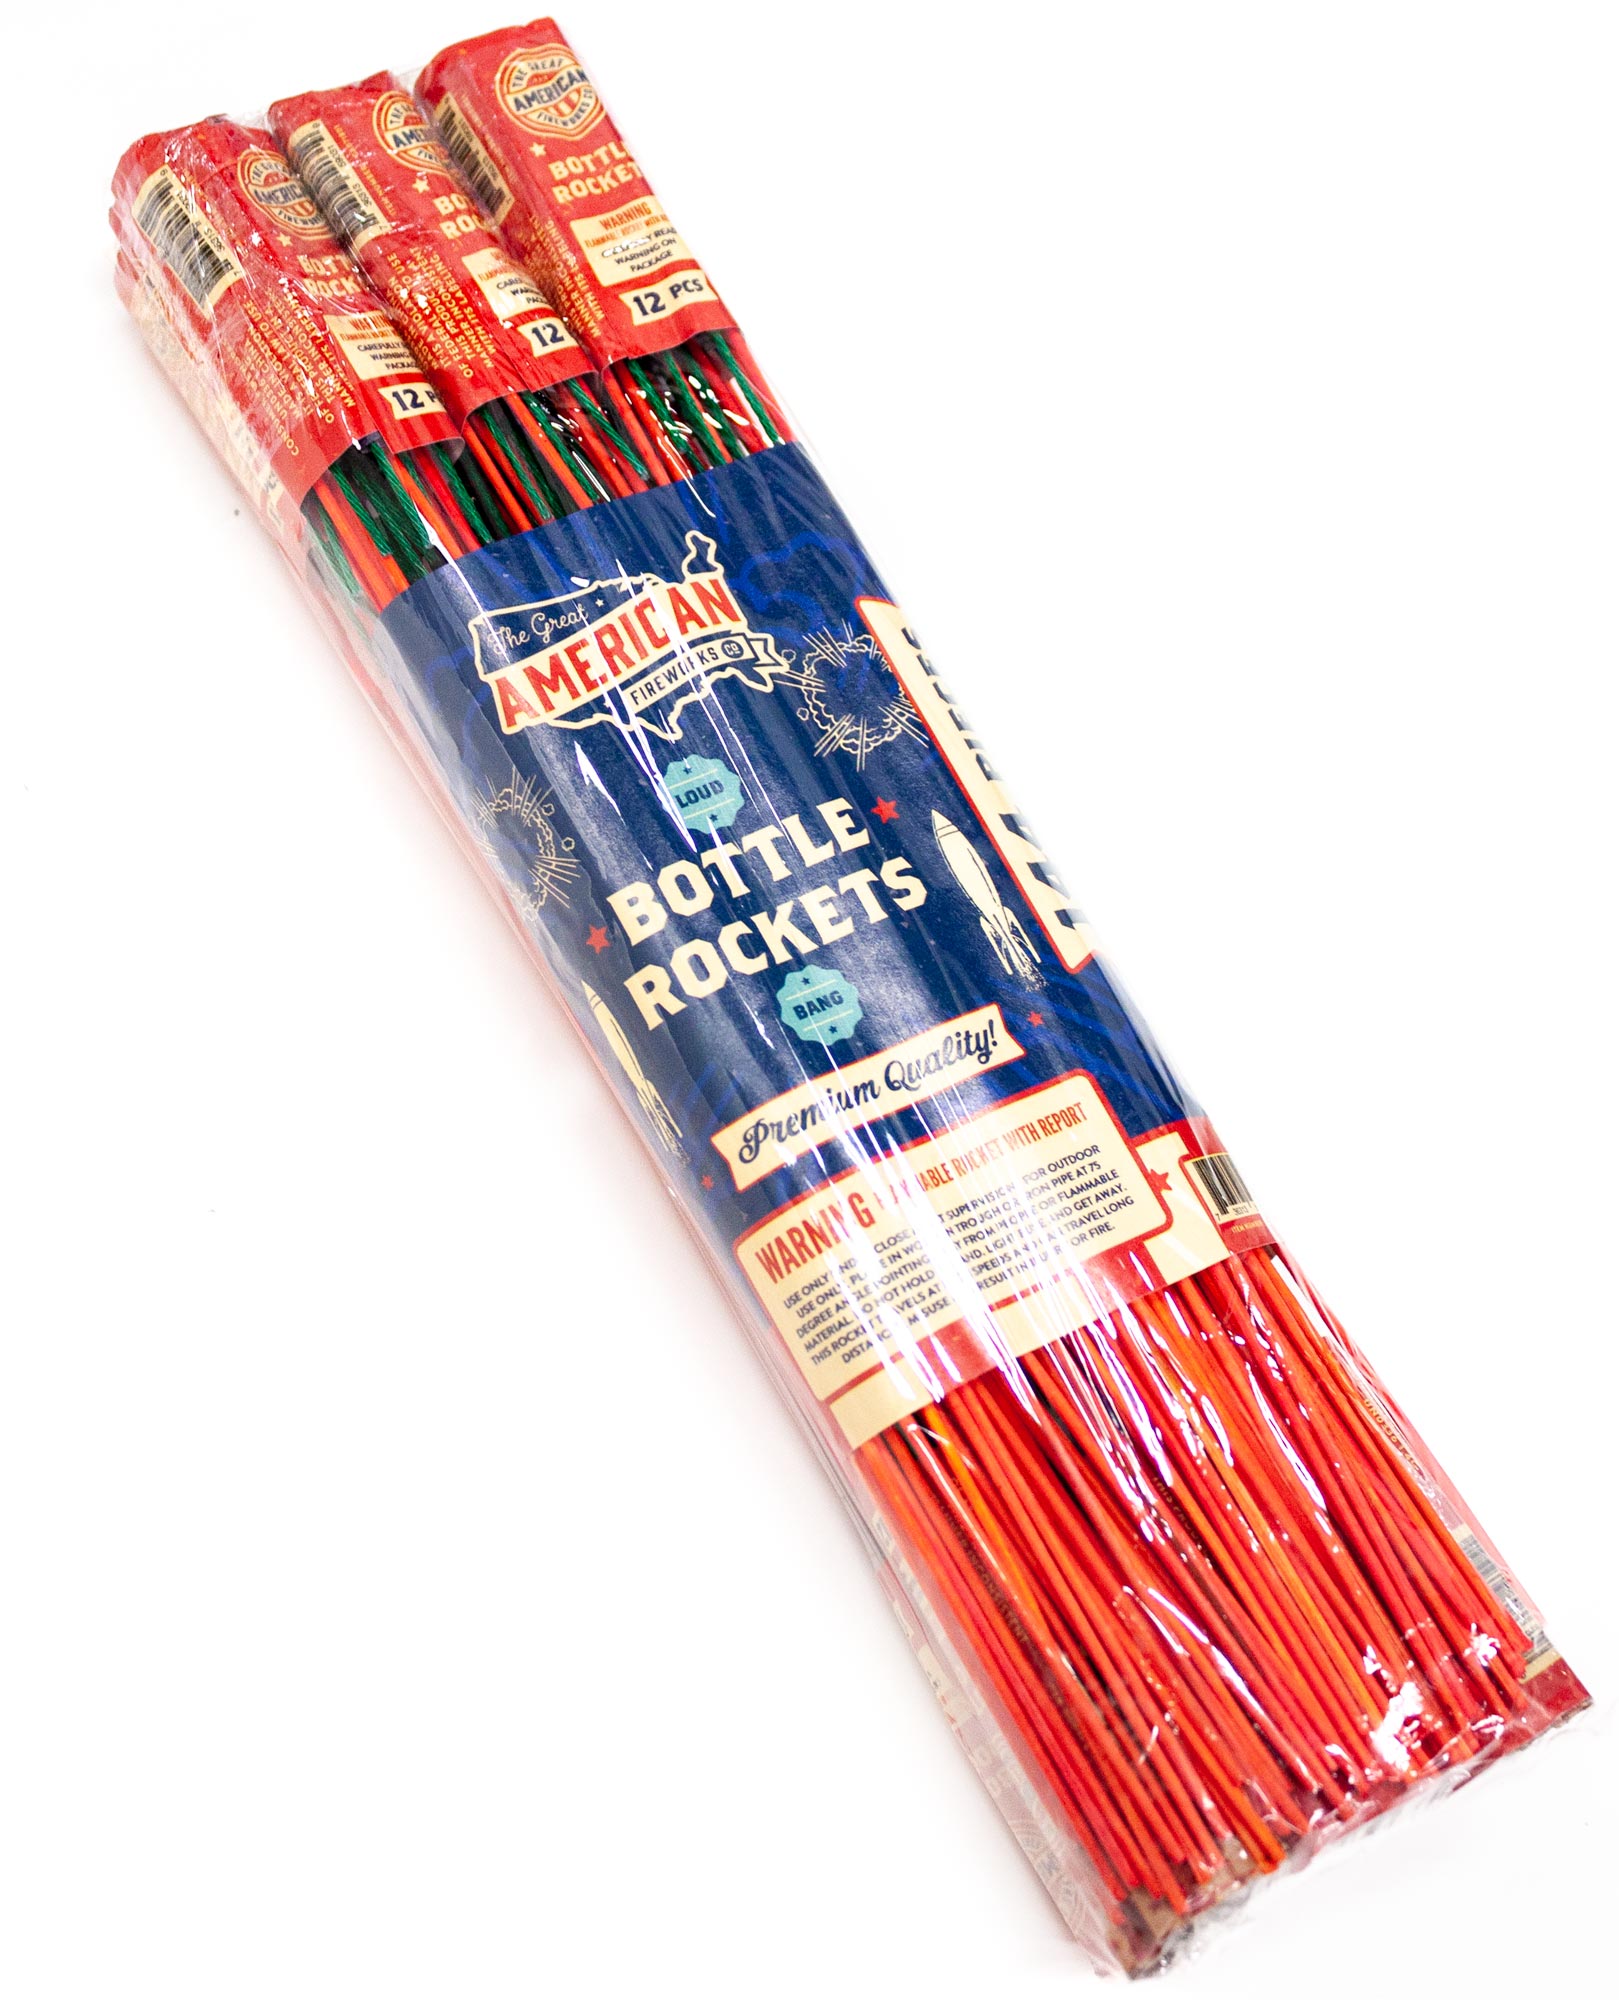 Bottle Rockets: Superior Fireworks Retail